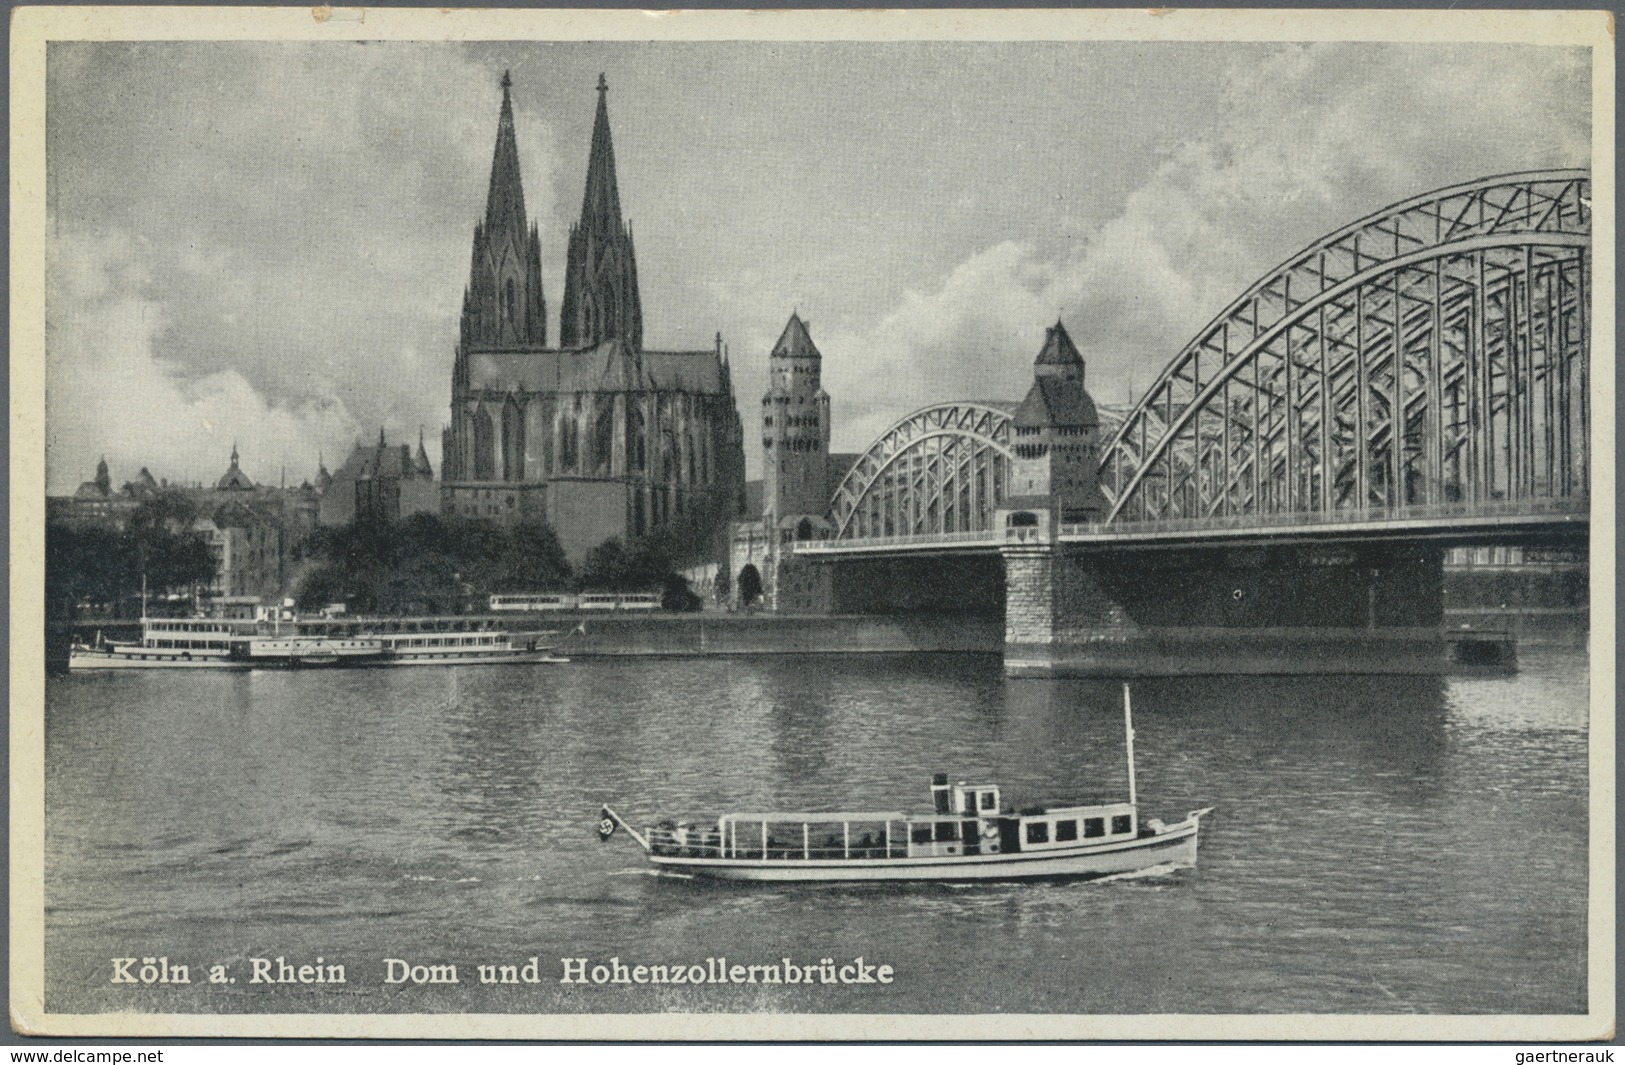 Ansichtskarten: Deutschland: Ab 1930er-Jahre, Sammlung von 384 meist versch. AK aus der Zeit des III